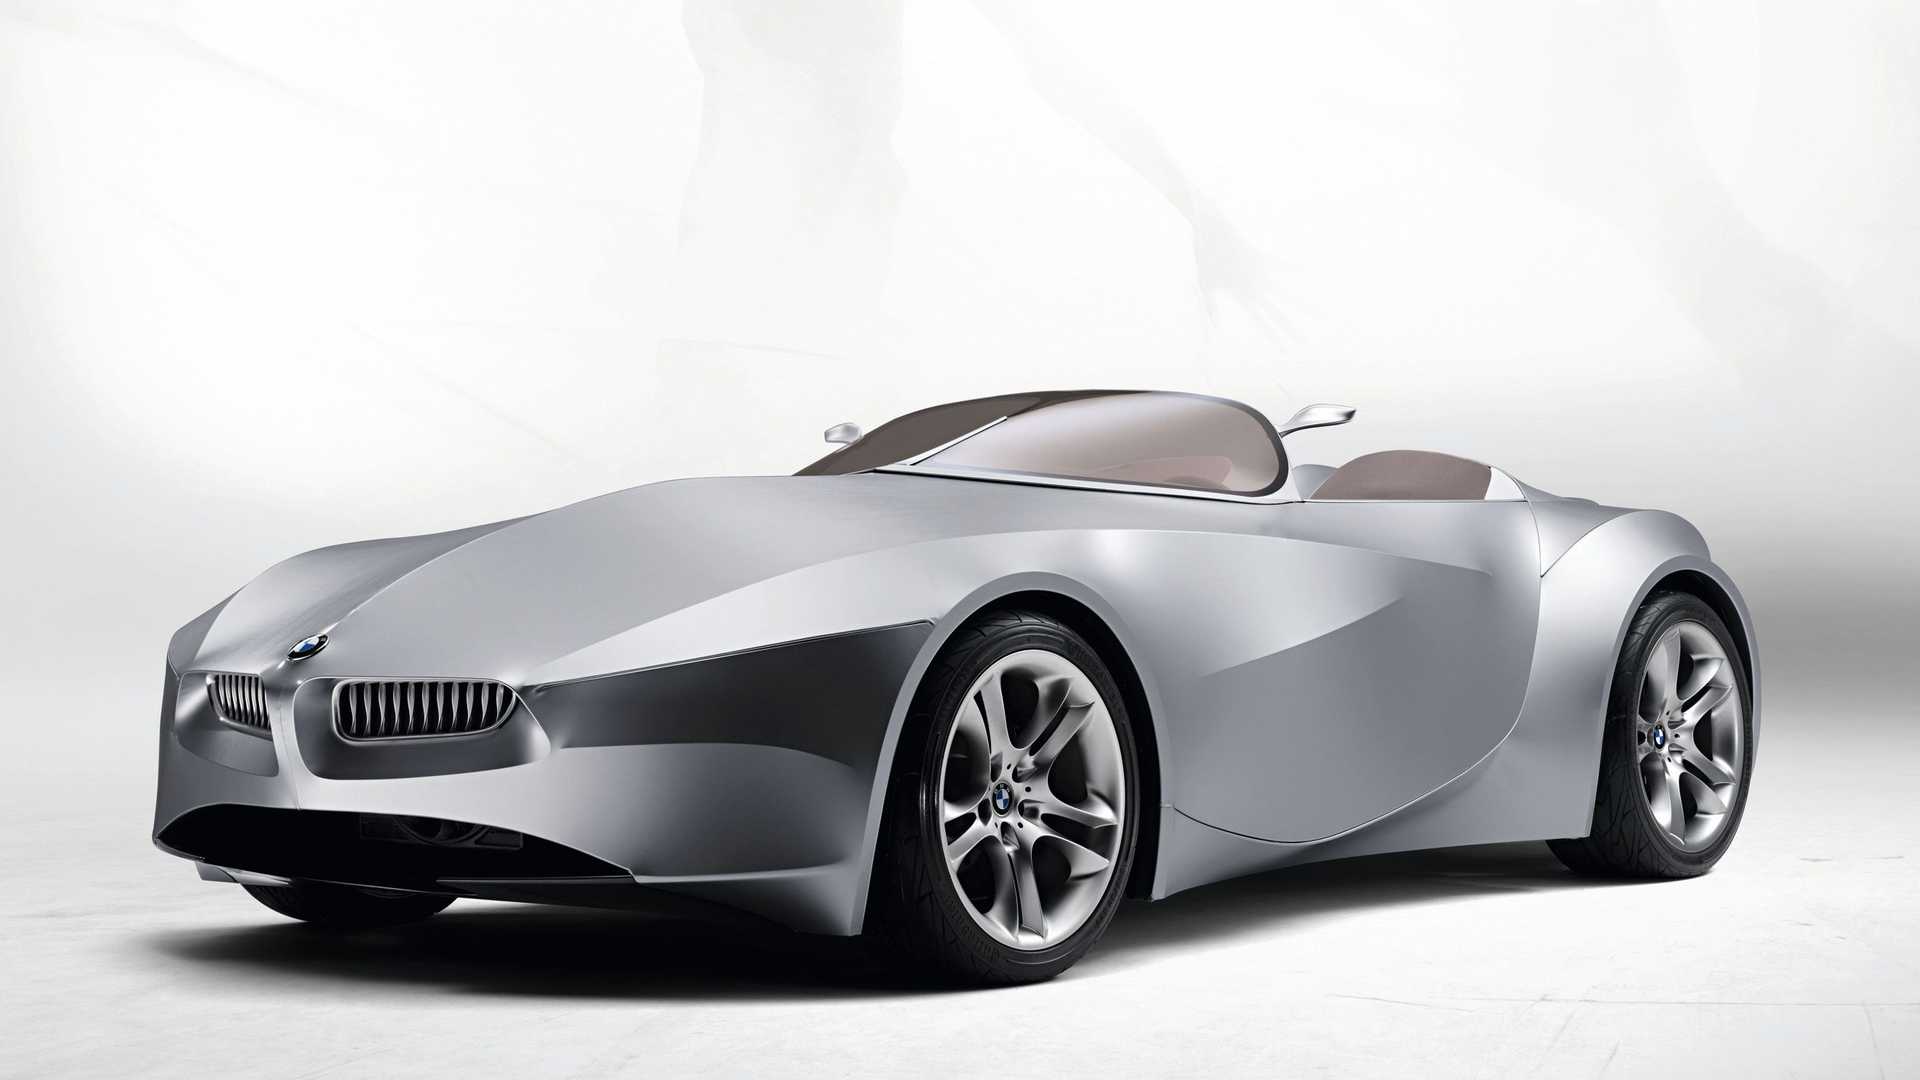 نمای سه چهارم خودروی مفهومی روباز بی ام و گینا / BMW GINA concept convertible